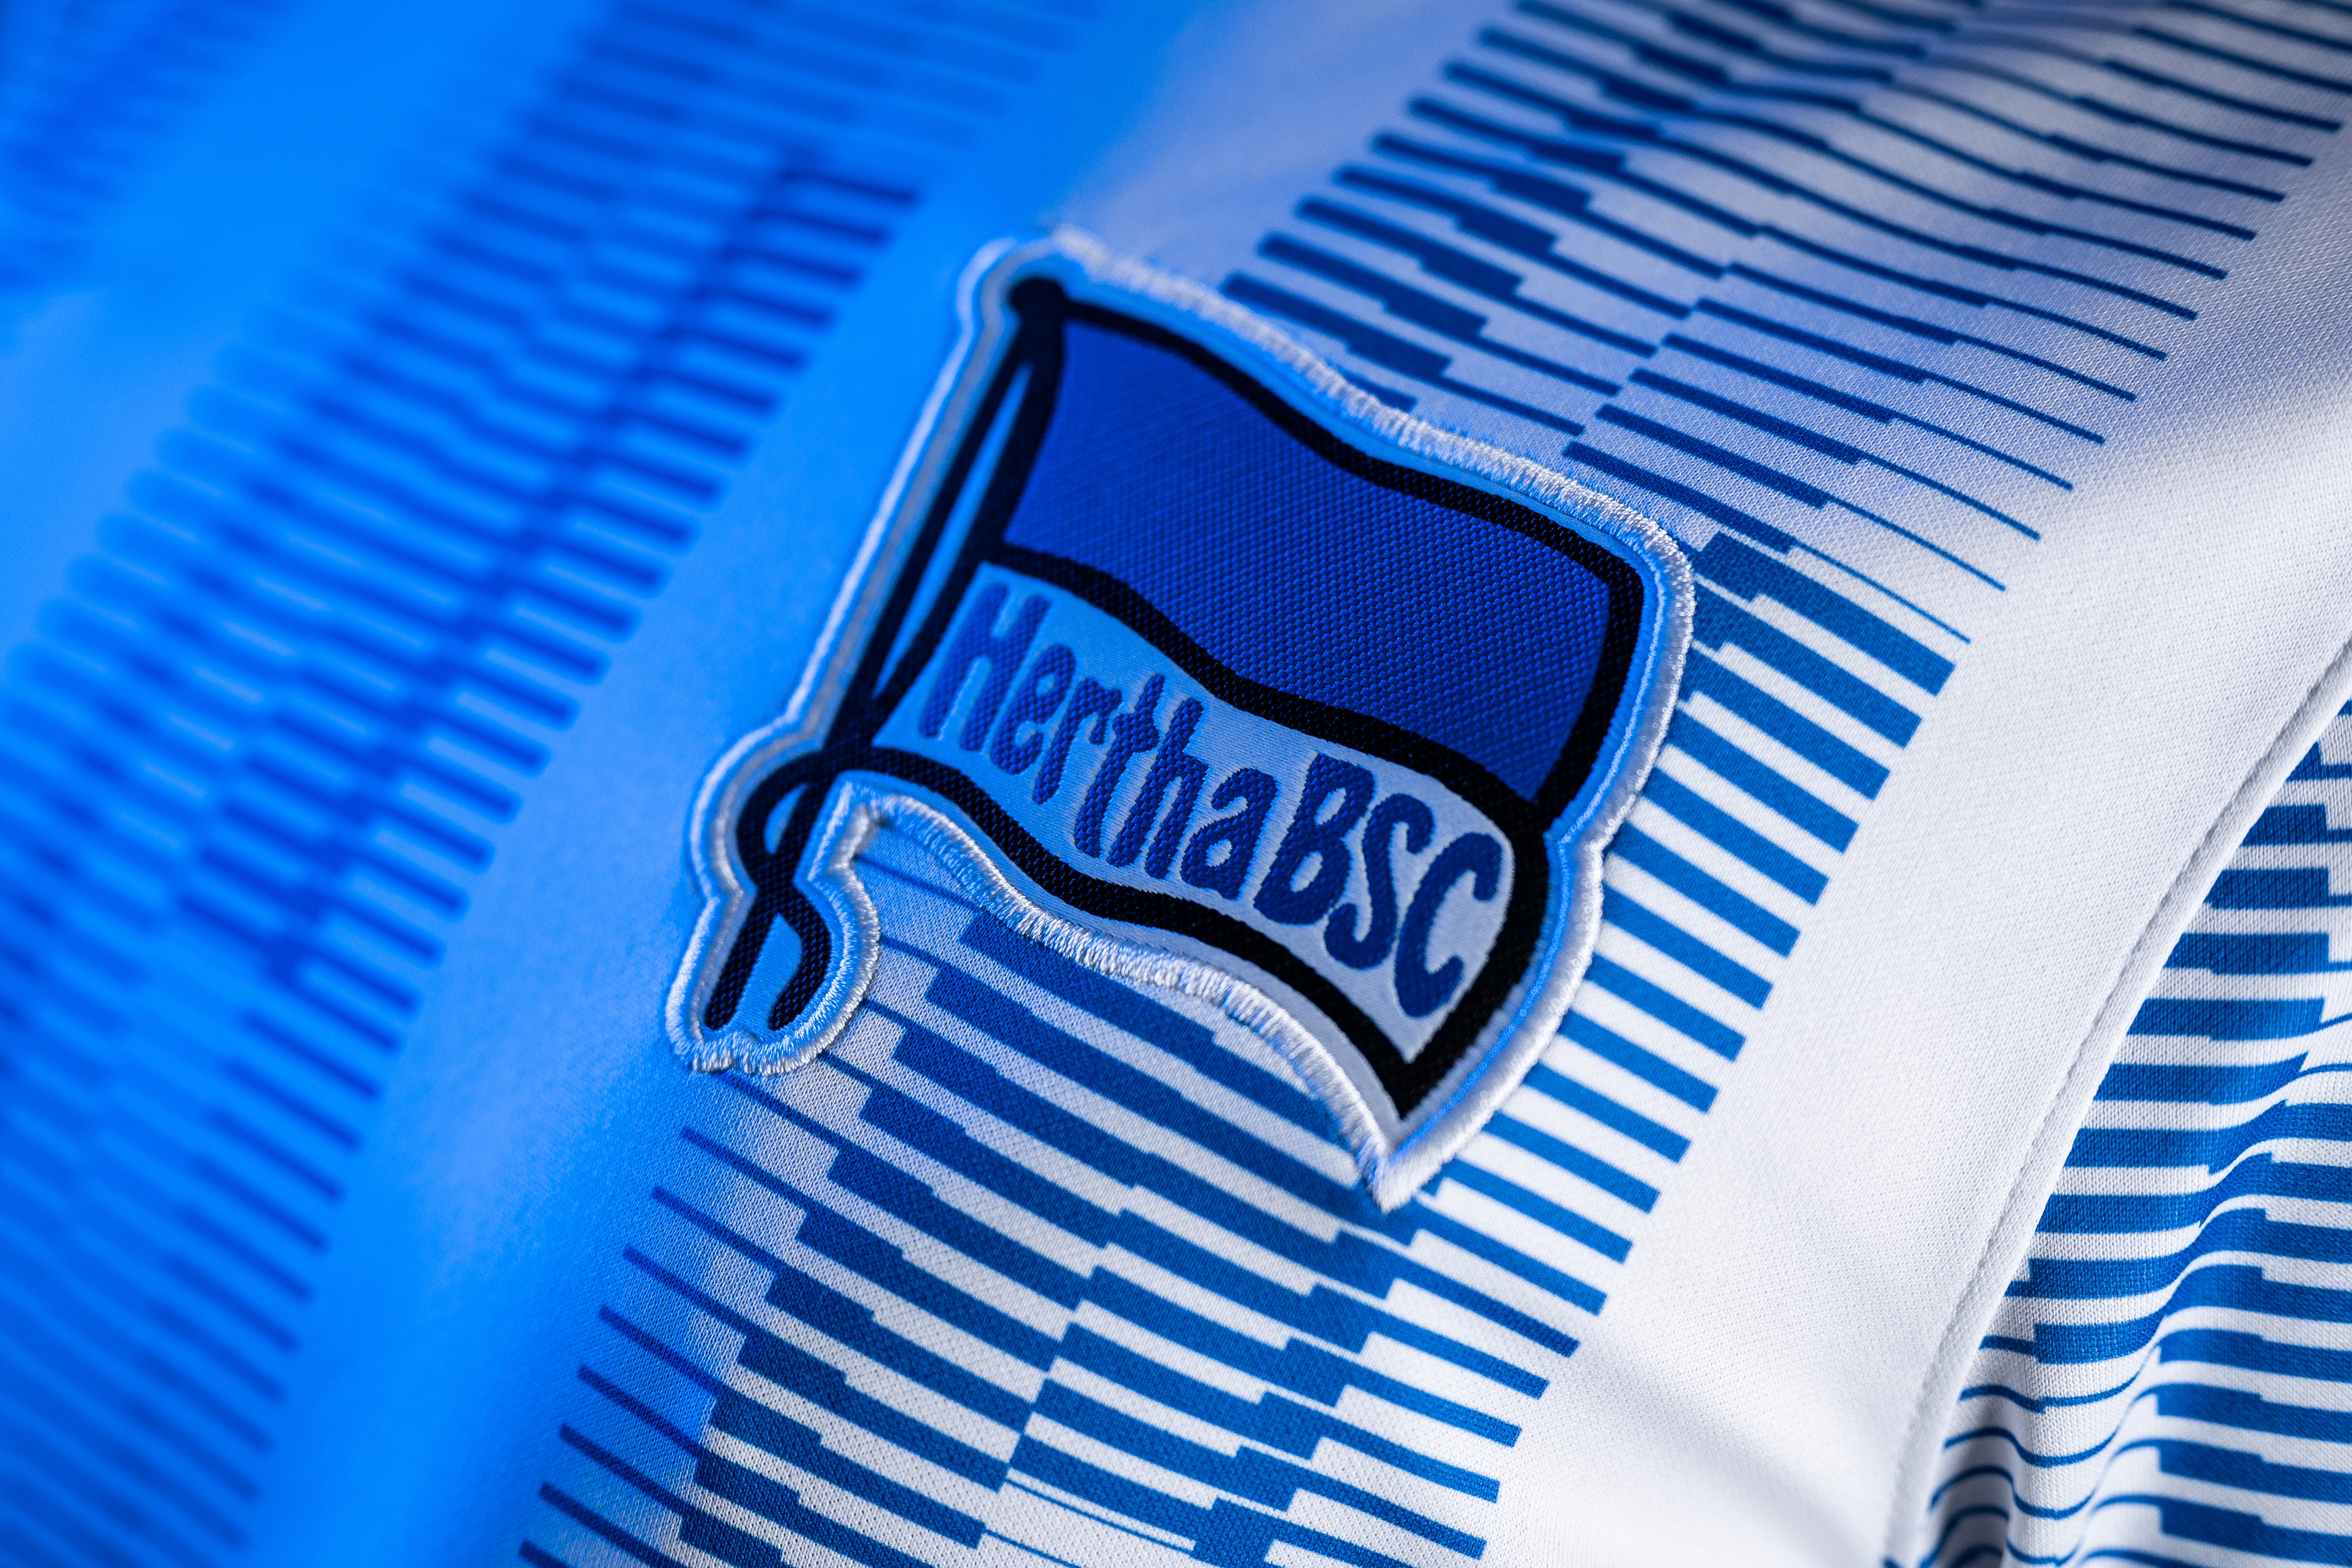 Unsere blau-weiße Hertha-Fahne auf dem Trikot.